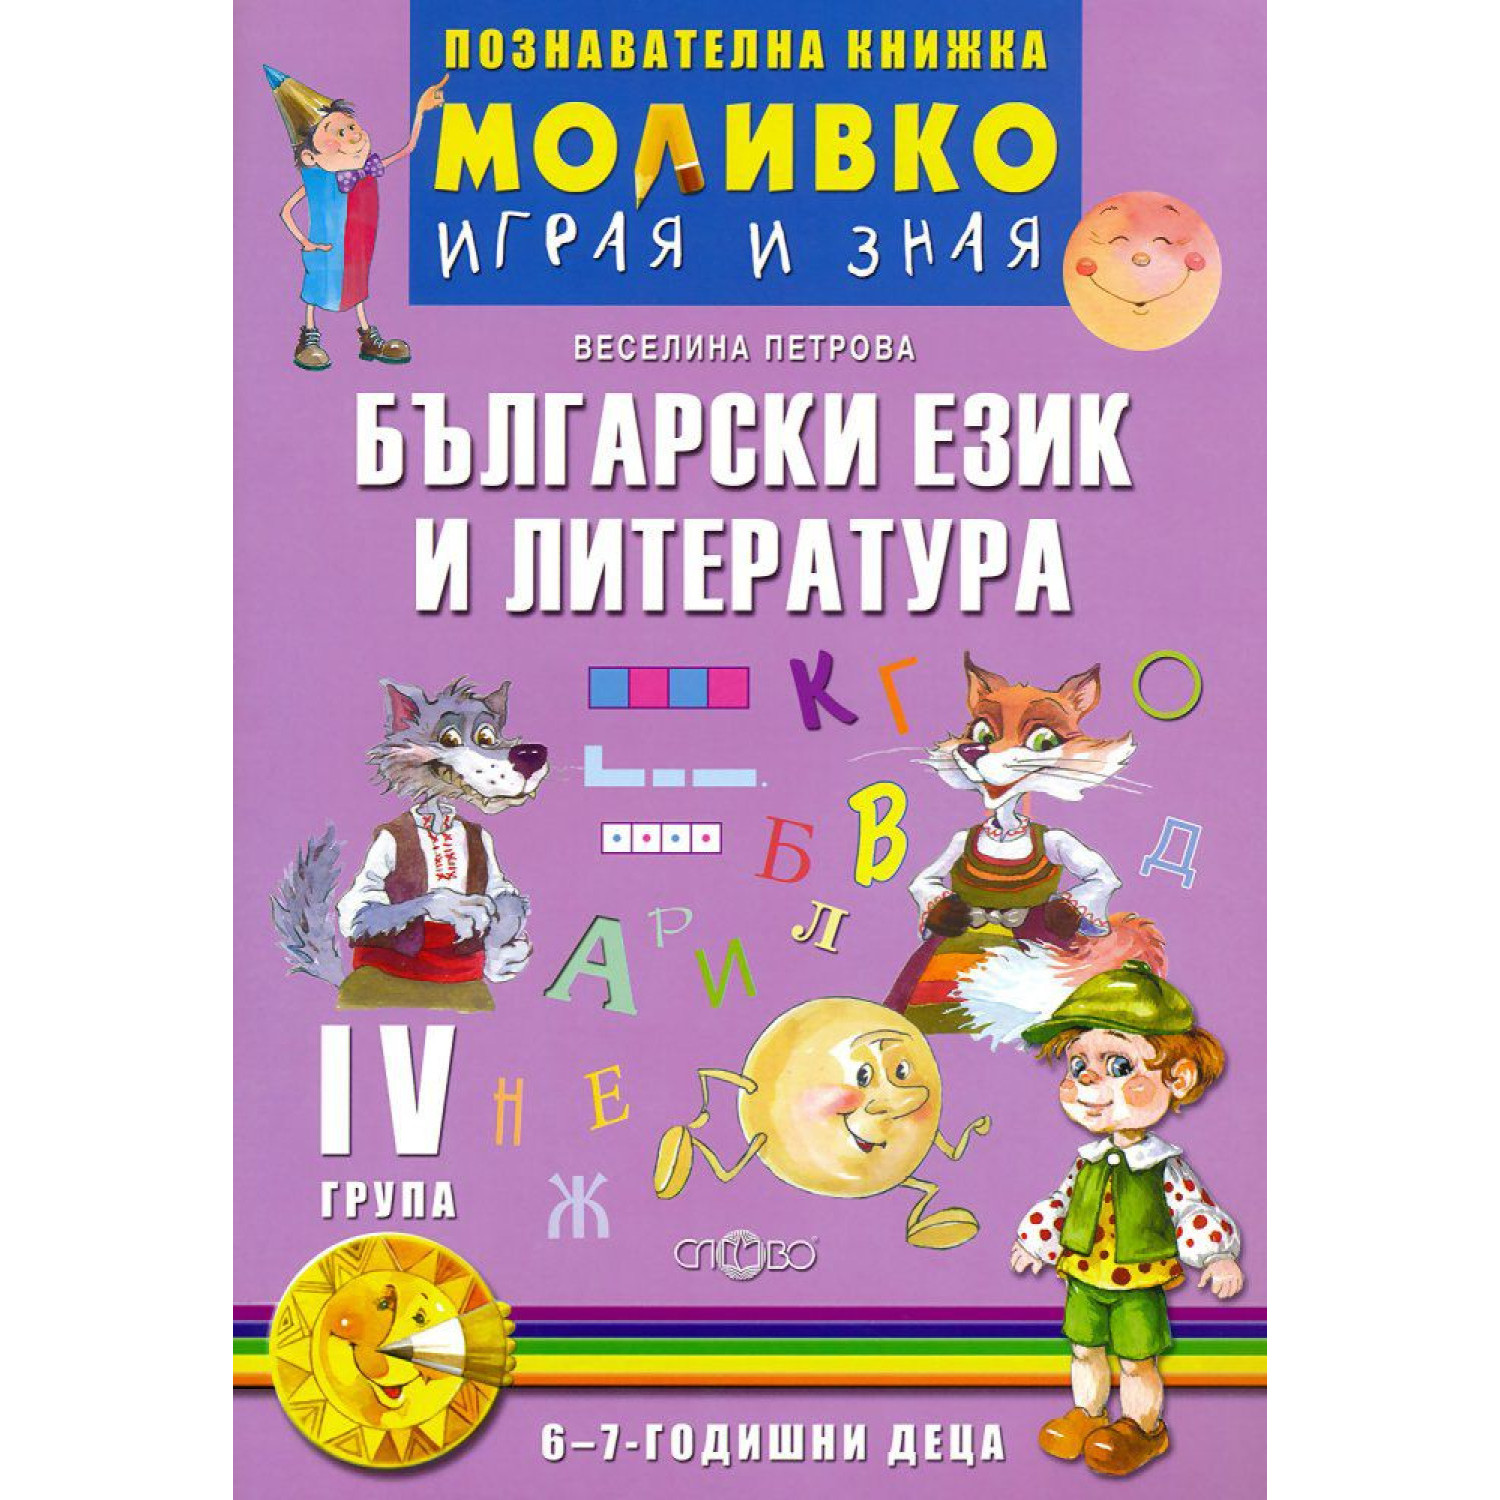 Моливко - Играя и зная Български език и литература 6-7 г.